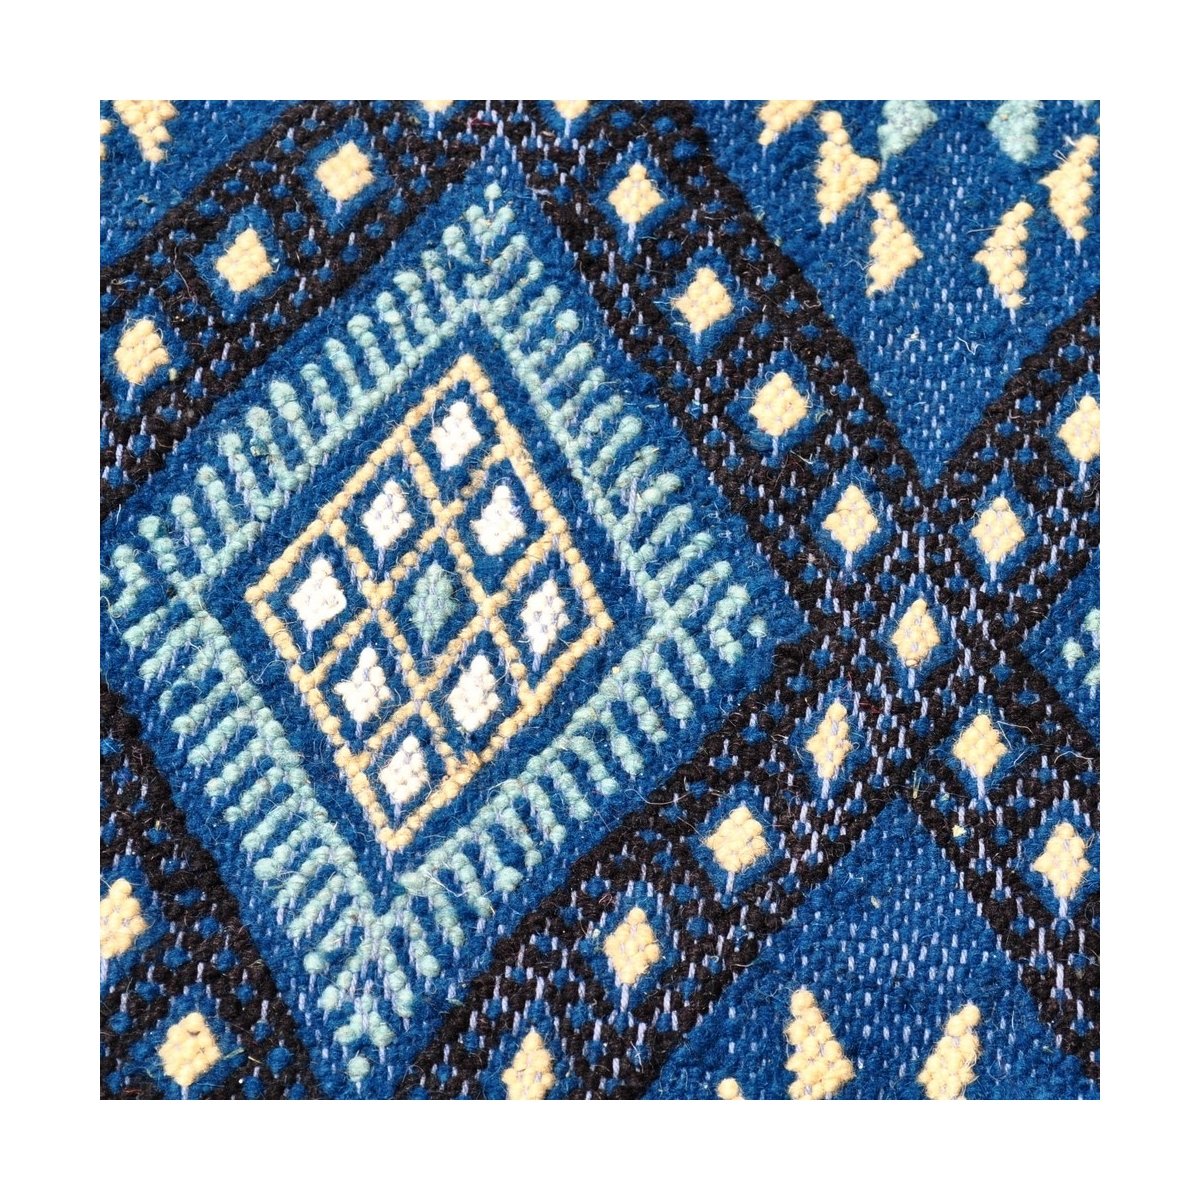 Berber tapijt Tapijt Margoum Zriba 120x200 Blauw/Wit (Handgeweven, Wol, Tunesië) Tunesisch Margoum Tapijt uit de stad Kairouan. 